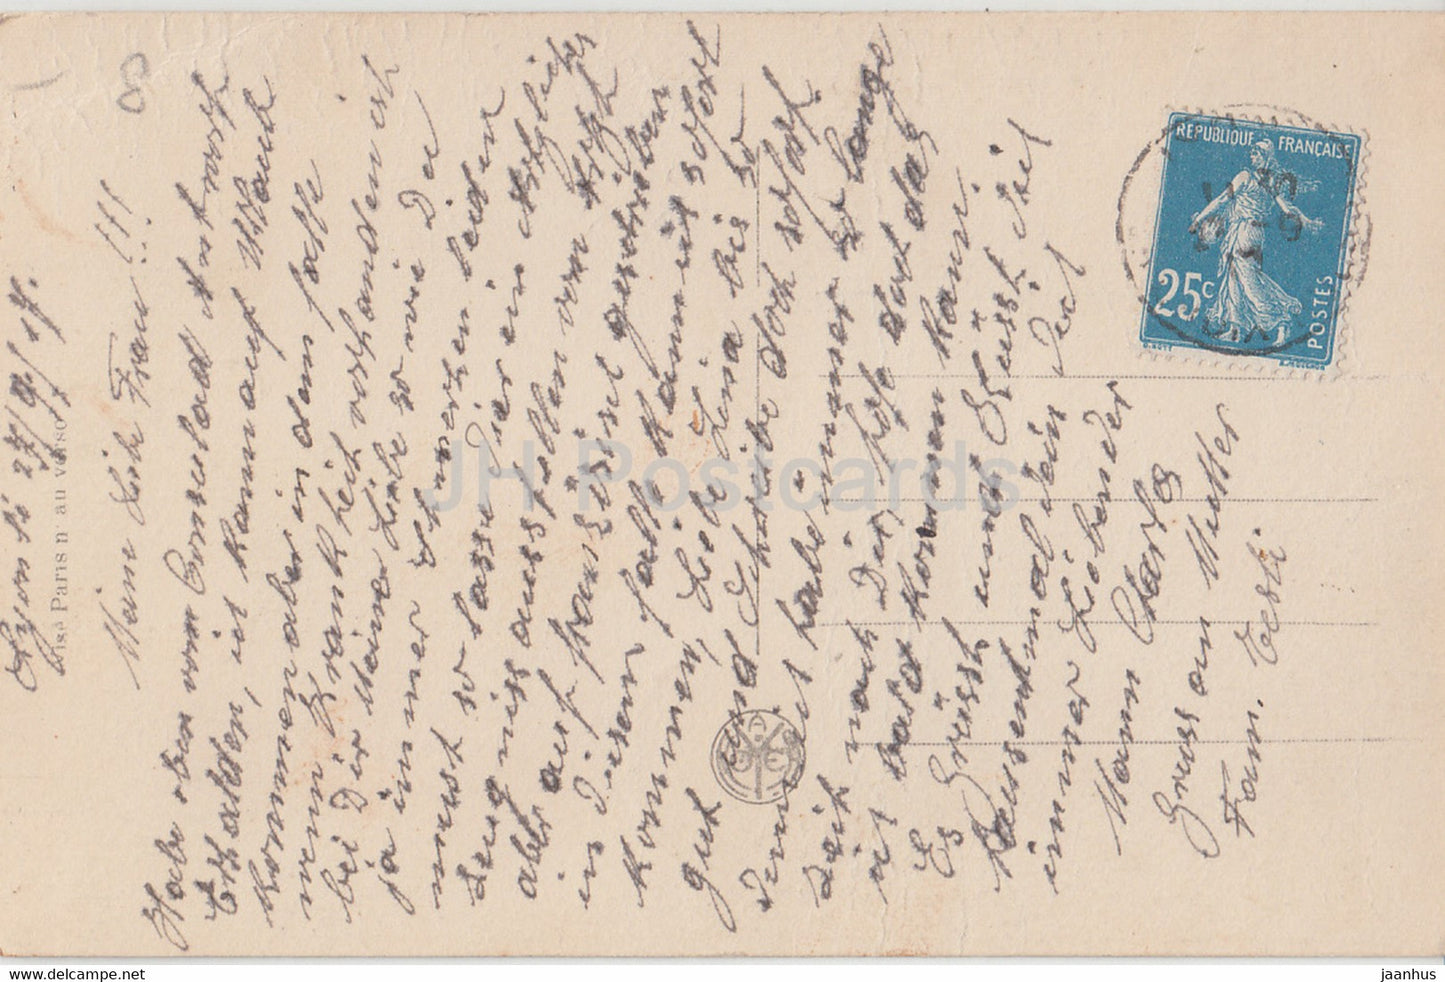 Helas Il Est Gueri – Krankenhaus – Soldat – Patriotisch 1221/2 – alte Postkarte – 1917 – Frankreich – gebraucht